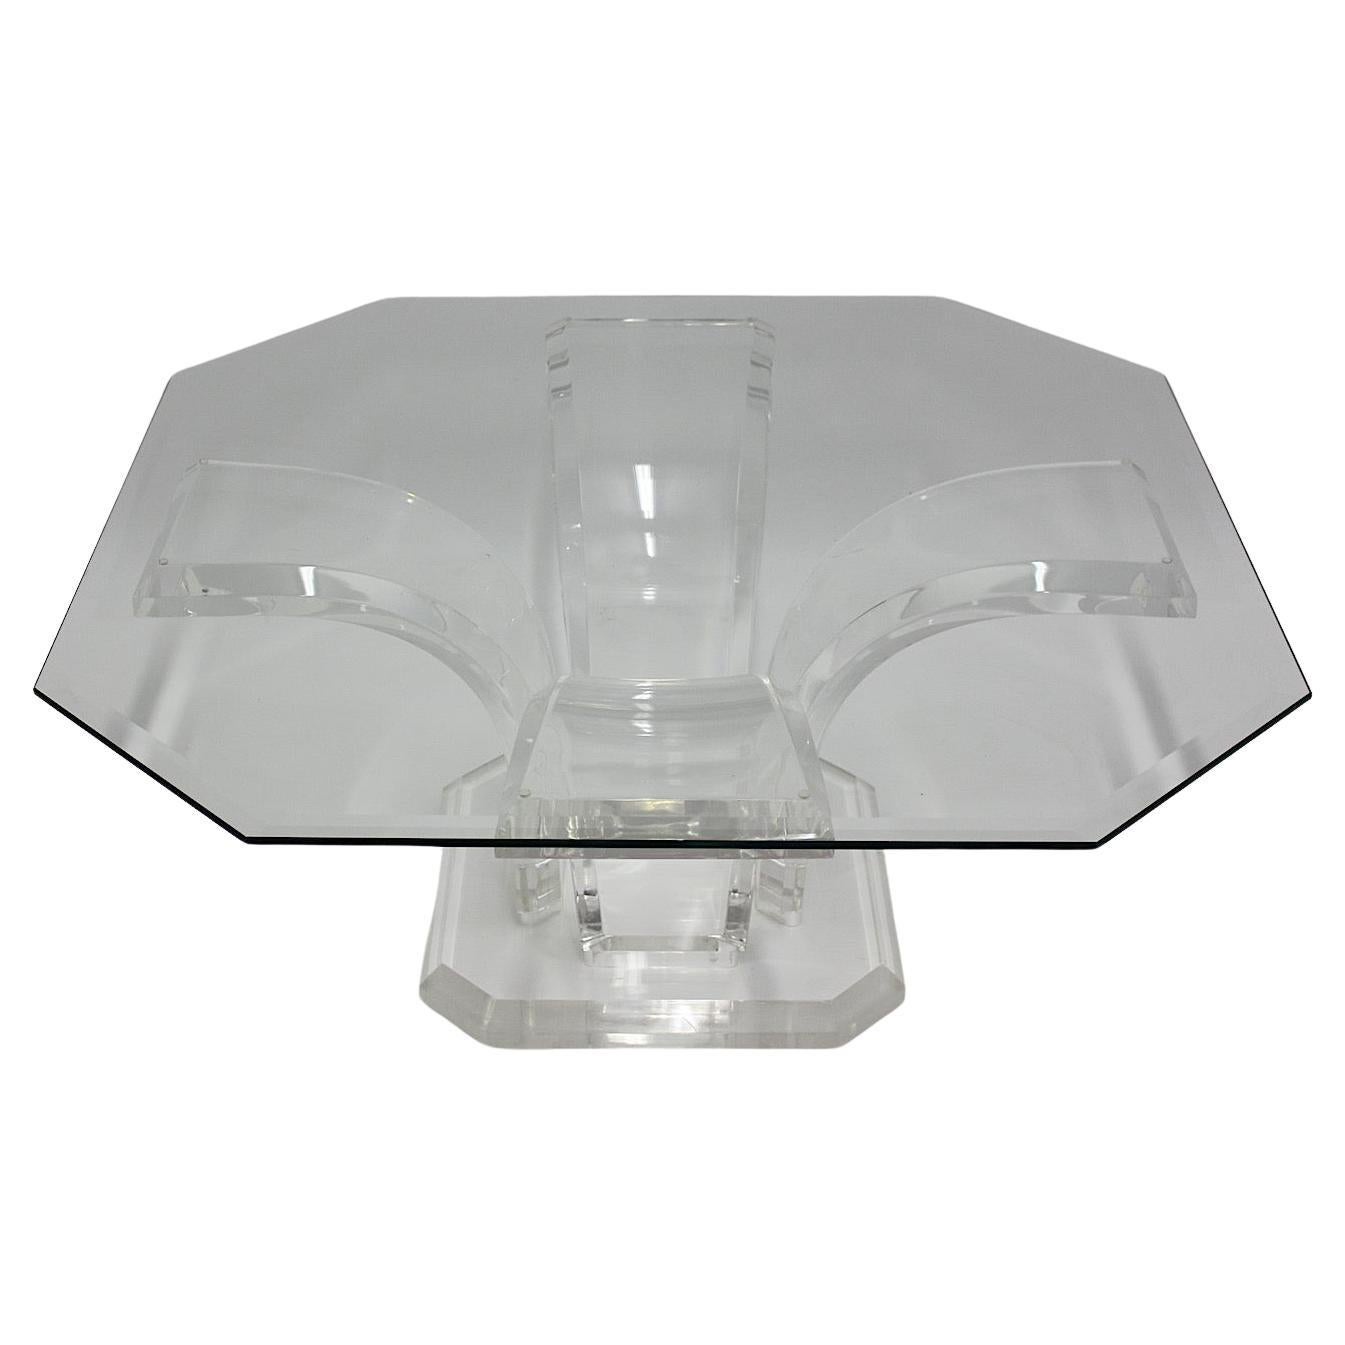 Table basse rectangulaire en verre lucite transparent de l'ère spatiale, circa 1970